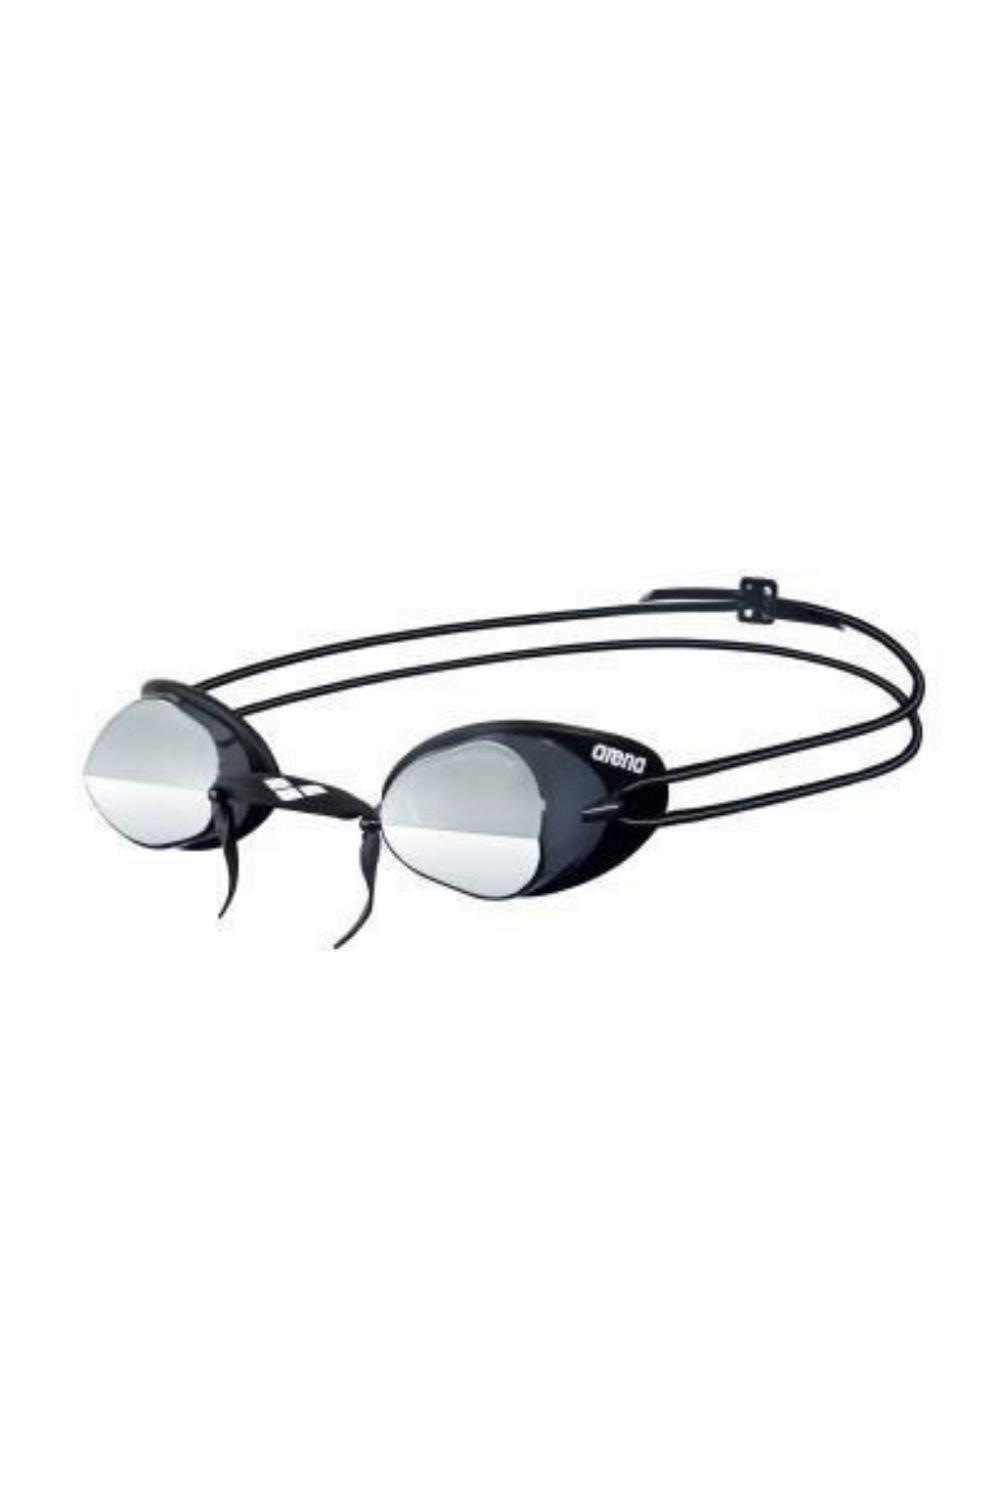 Очки для плавания Swedix Mirror - Зеркальные линзы Arena, серебро очки для плавания arena swedix black blue